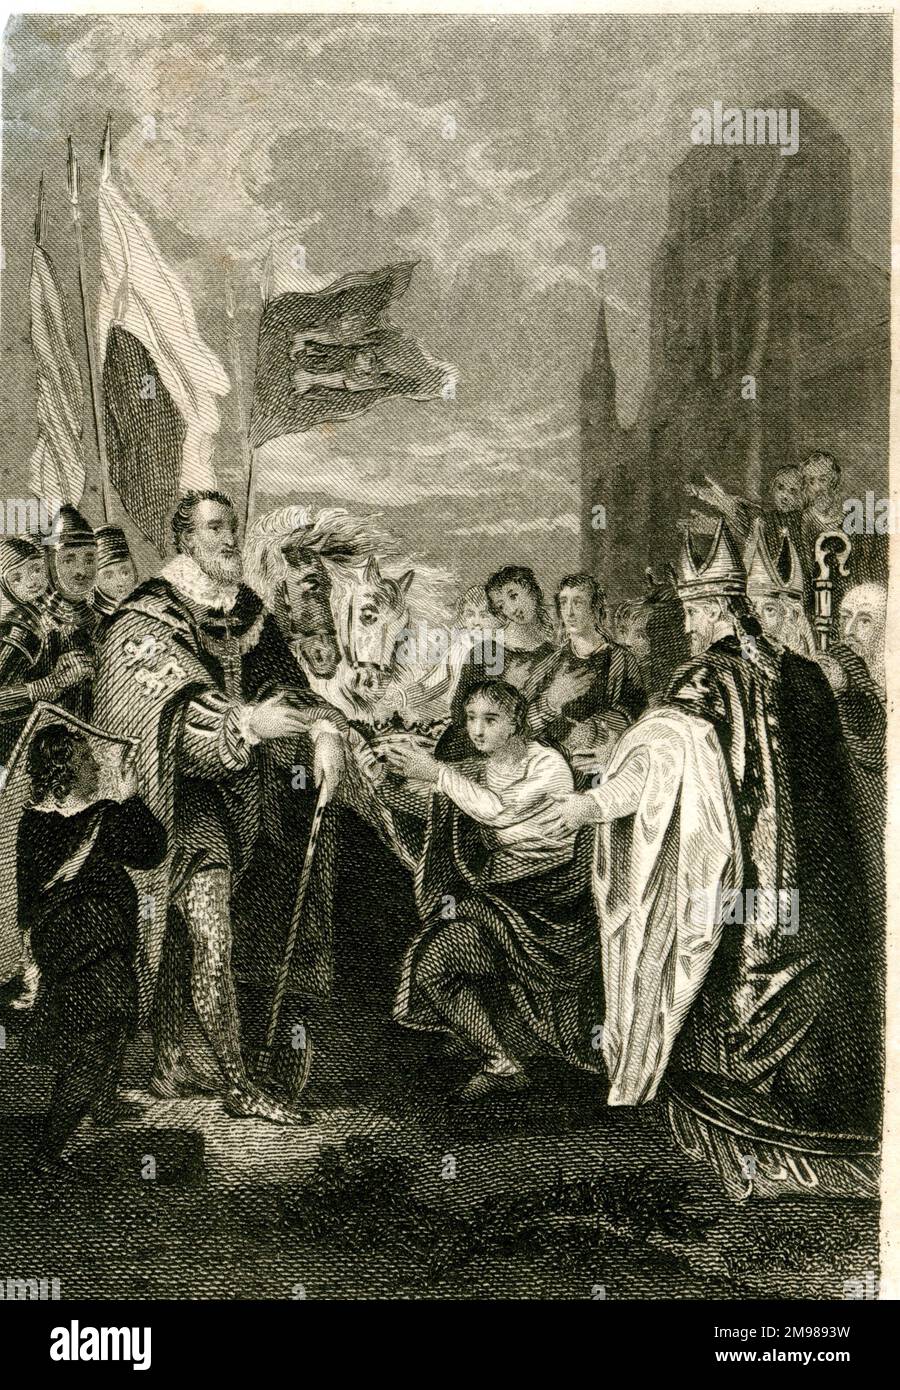 William I. der Eroberer (1027-1087) erhält die Krone, nachdem er die Schlacht von Hastings gewonnen hat. Stockfoto